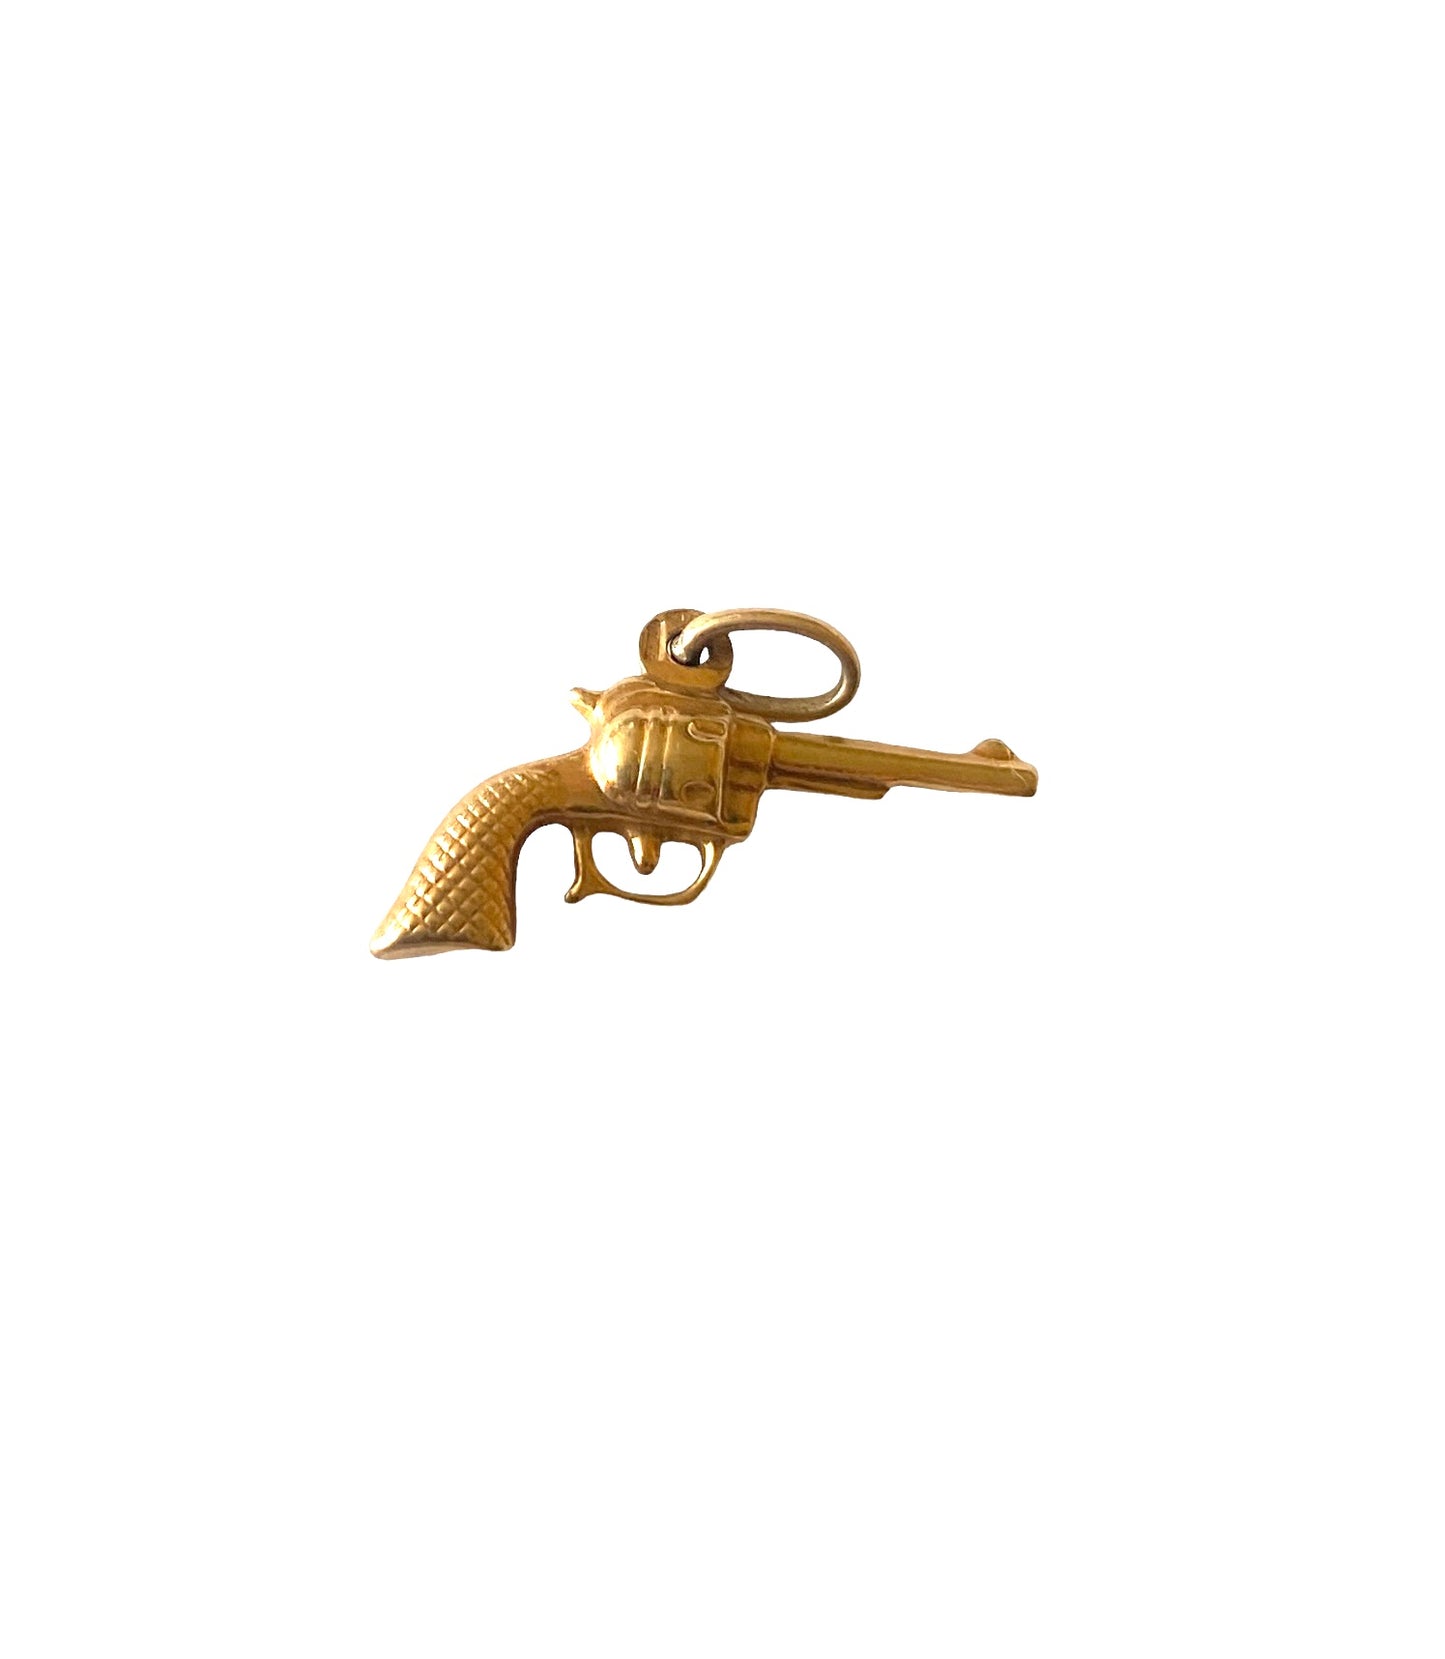 9ct vintage pistol / gun charm